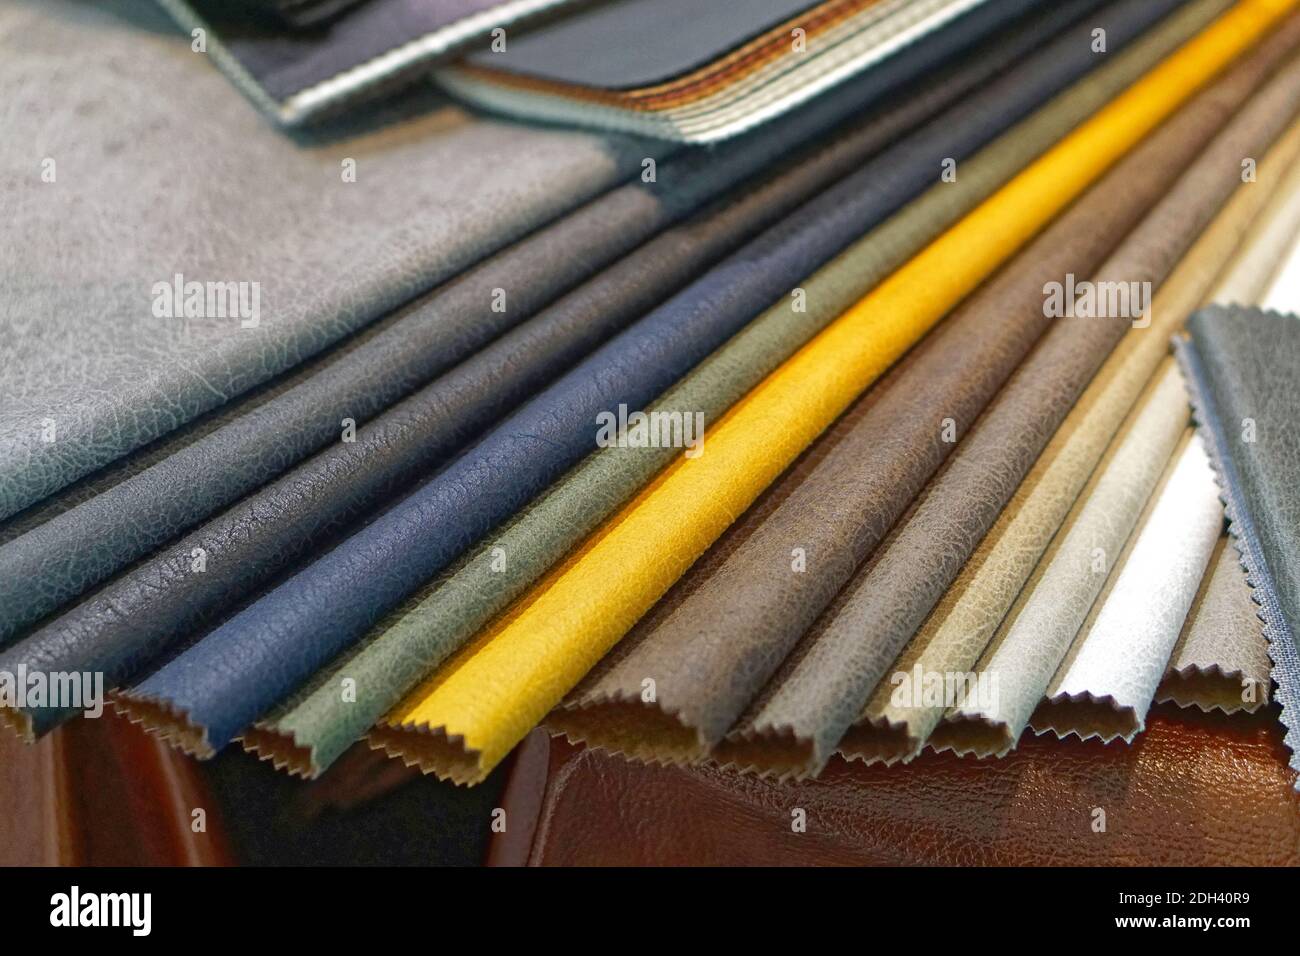 Échantillons de cuir et de matières textiles pour l'industrie du vêtement Banque D'Images